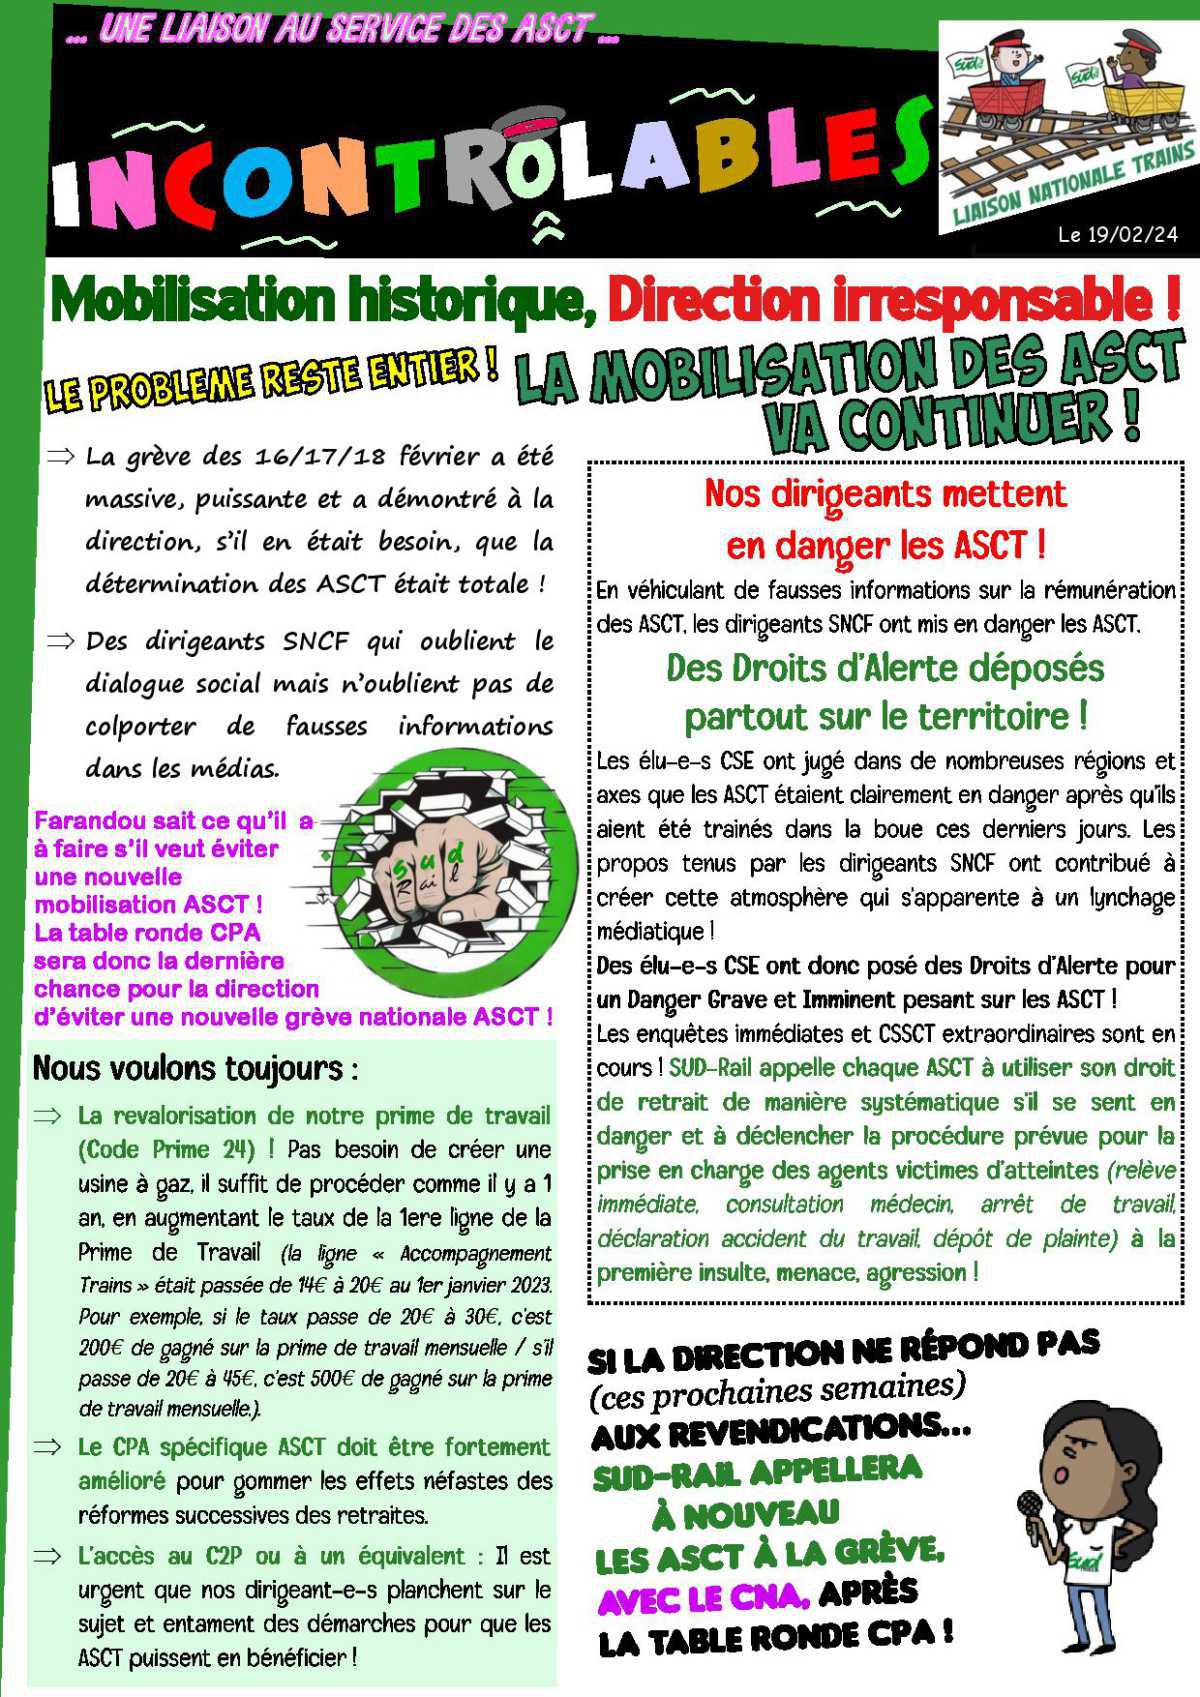 Mobilisation historique, Direction irresponsable !